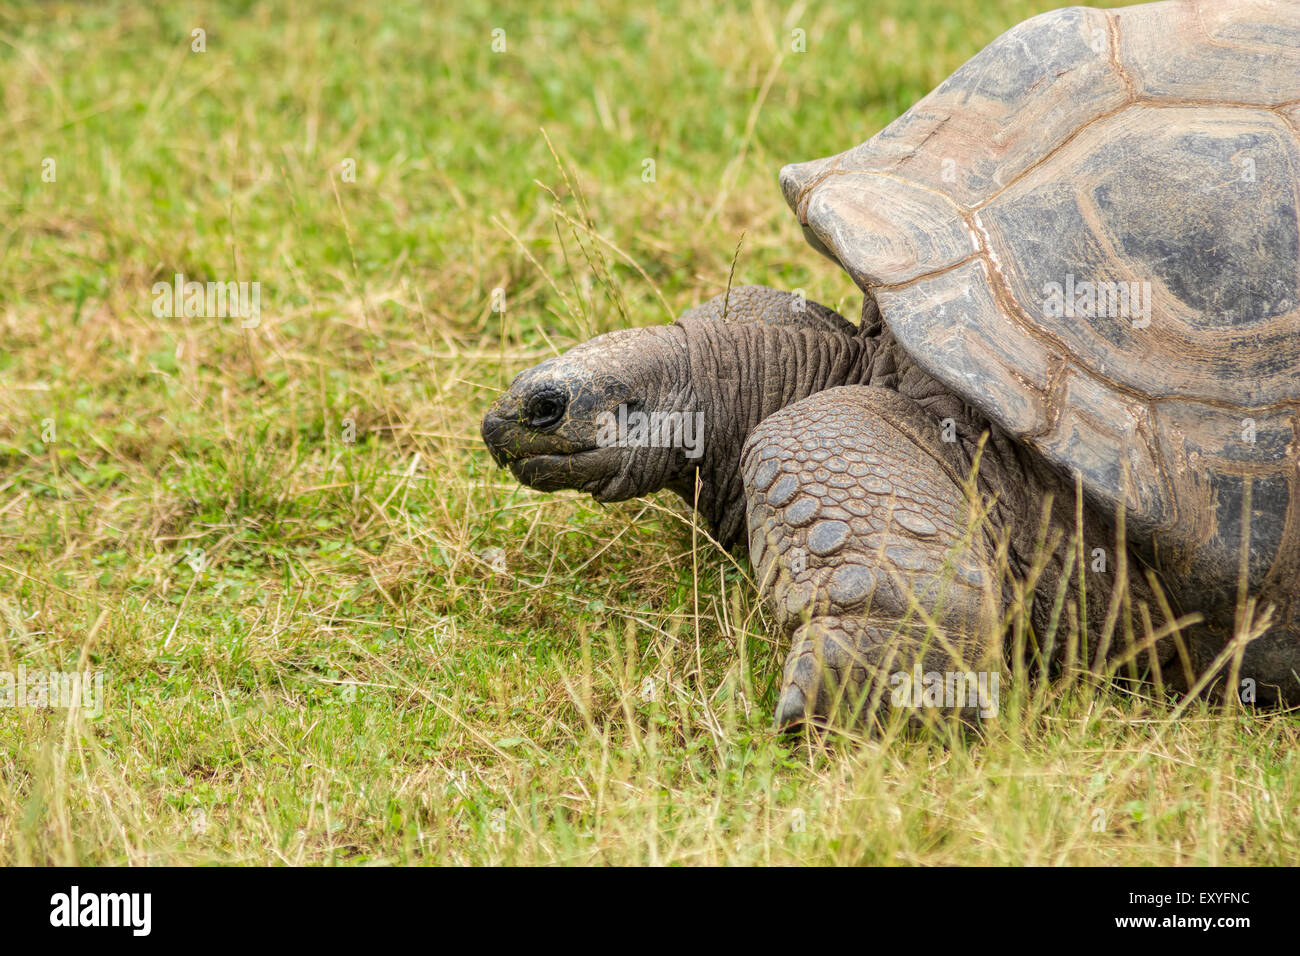 Turtoise, Dipsochelys Gigantean, schöne langlebige vom Aussterben bedrohte Tier. Stockfoto